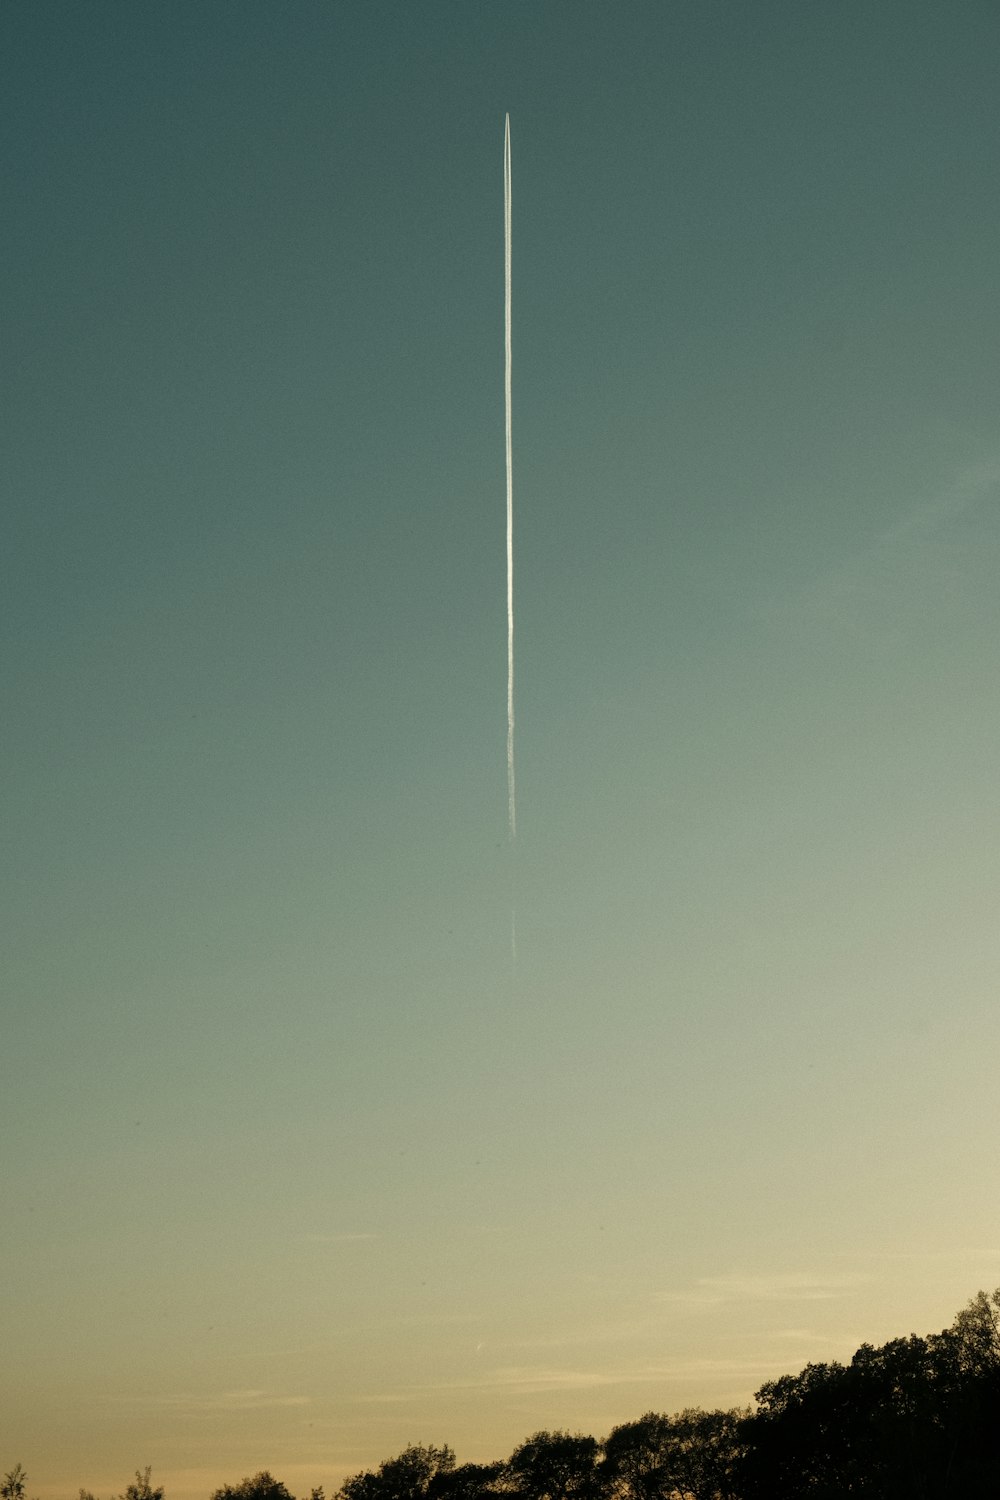 um avião está voando alto no céu